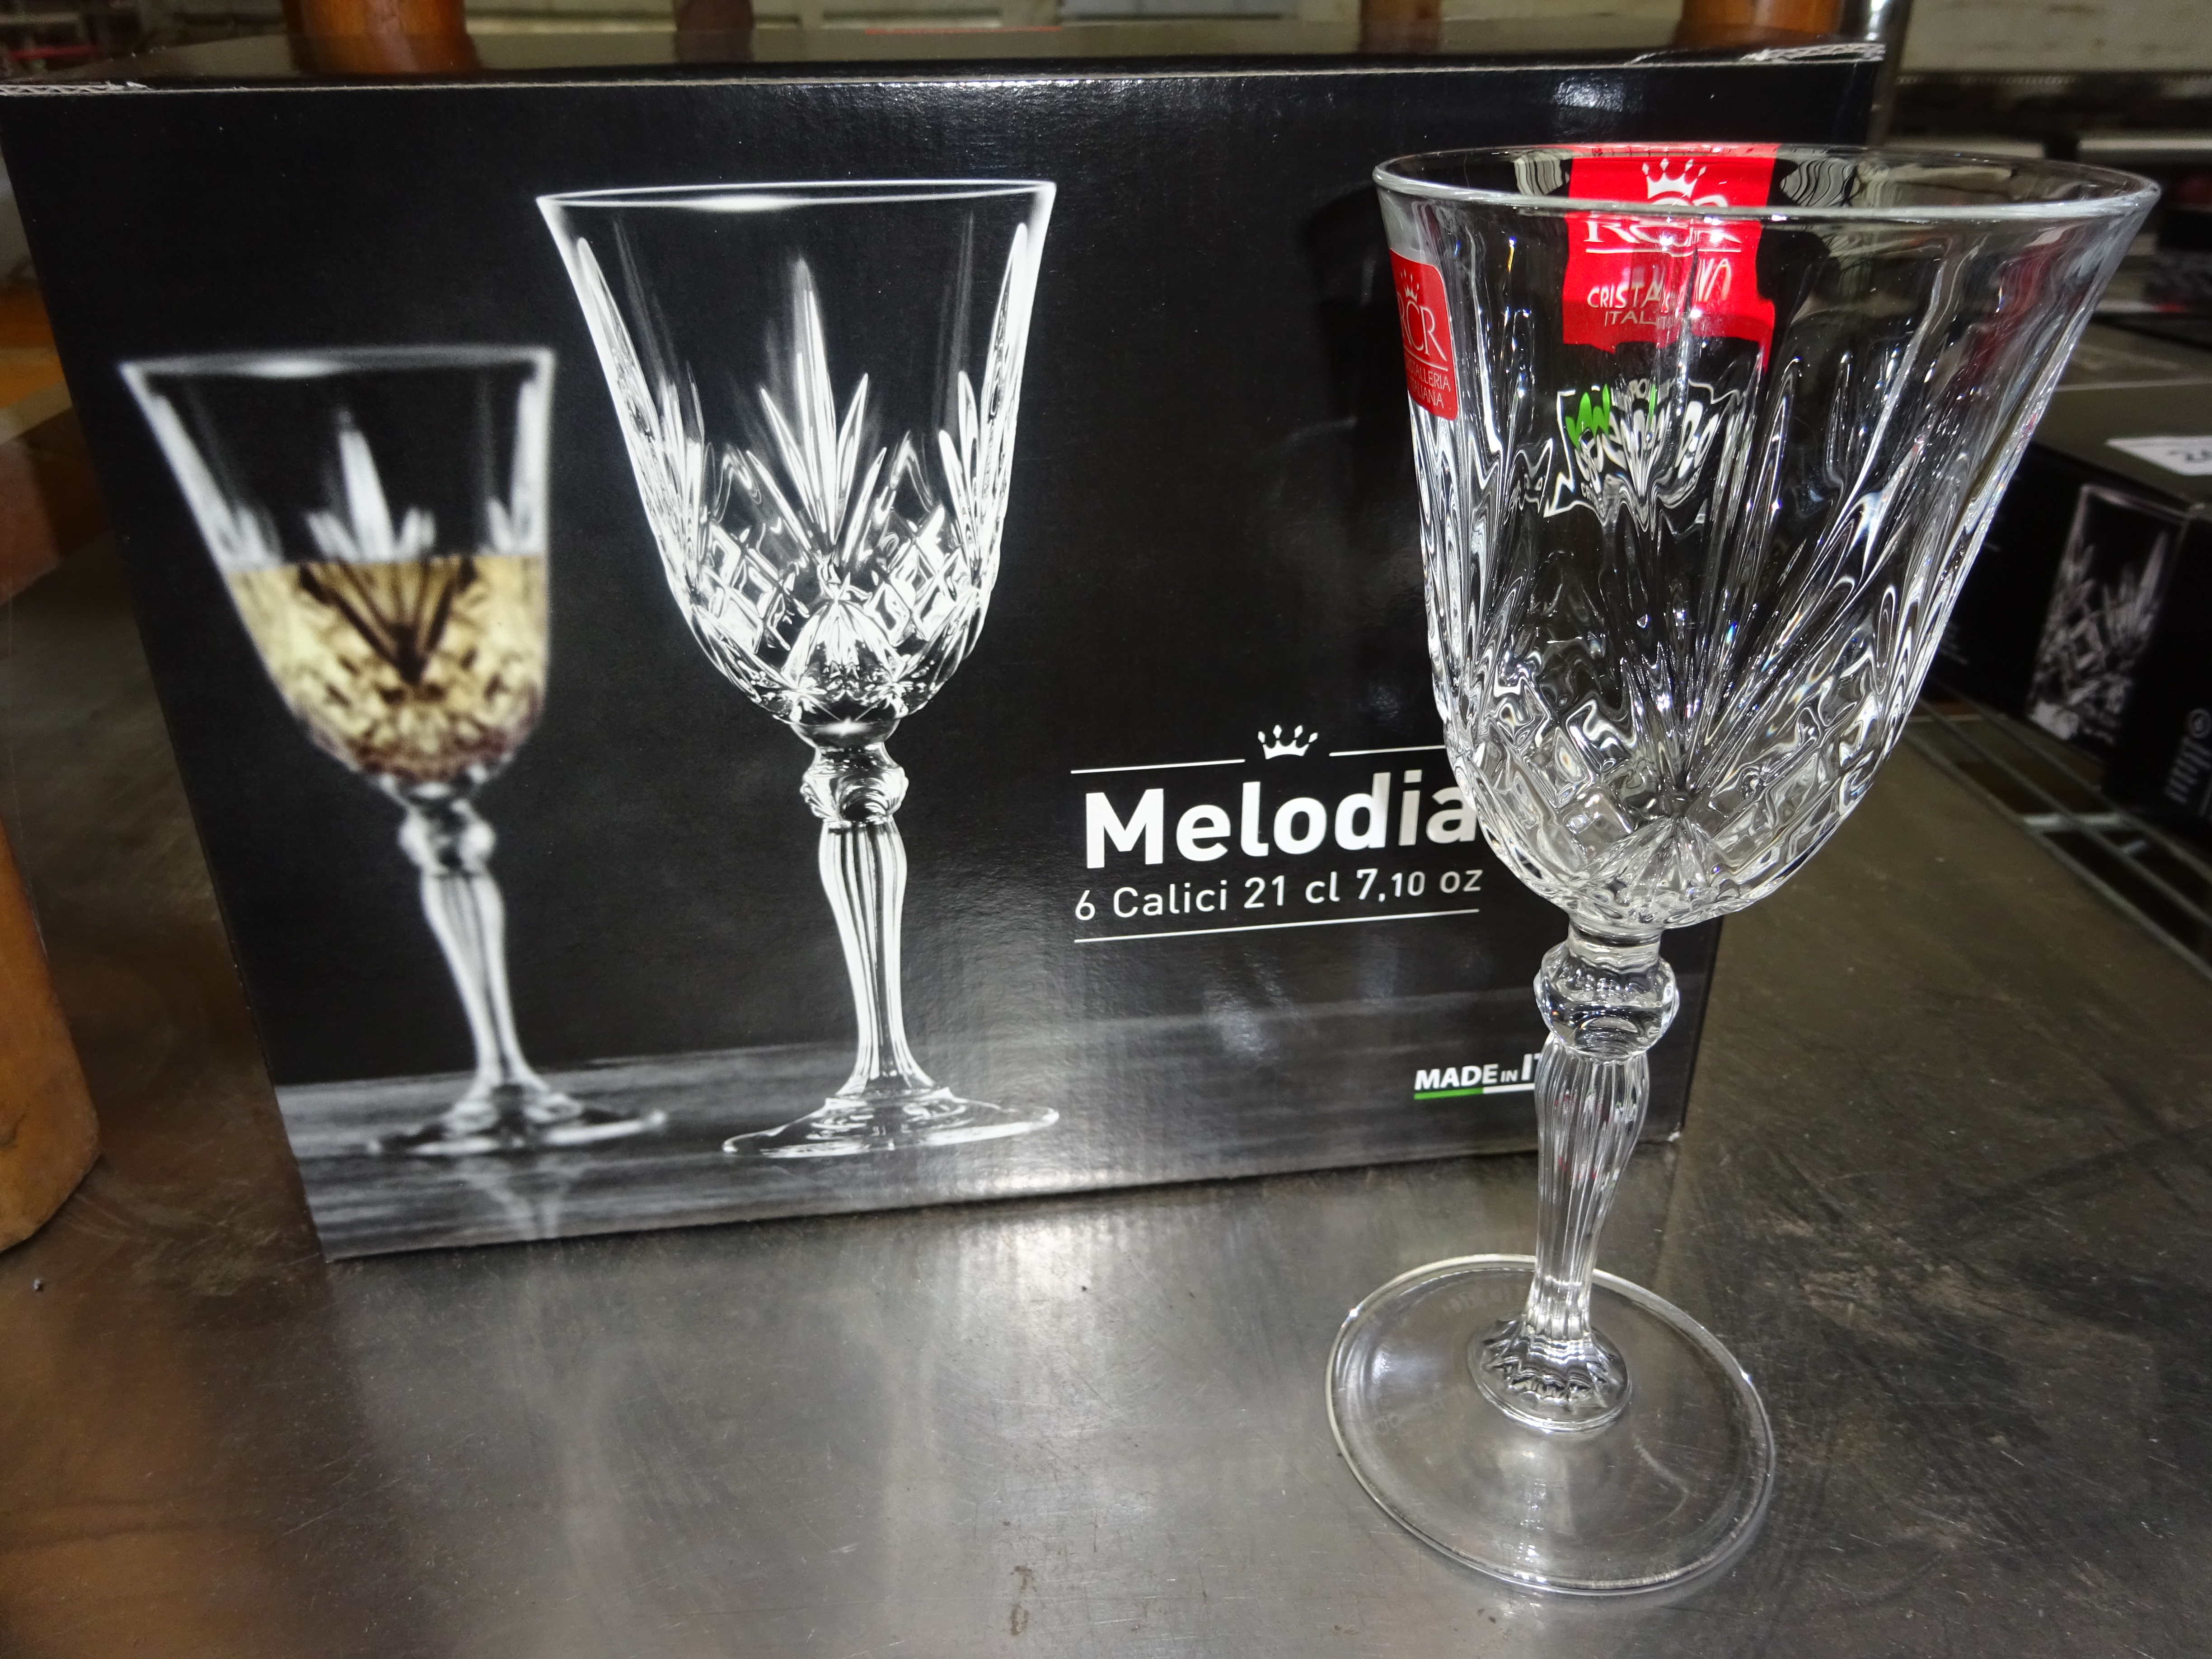 6 Melodia Crystal goblets.